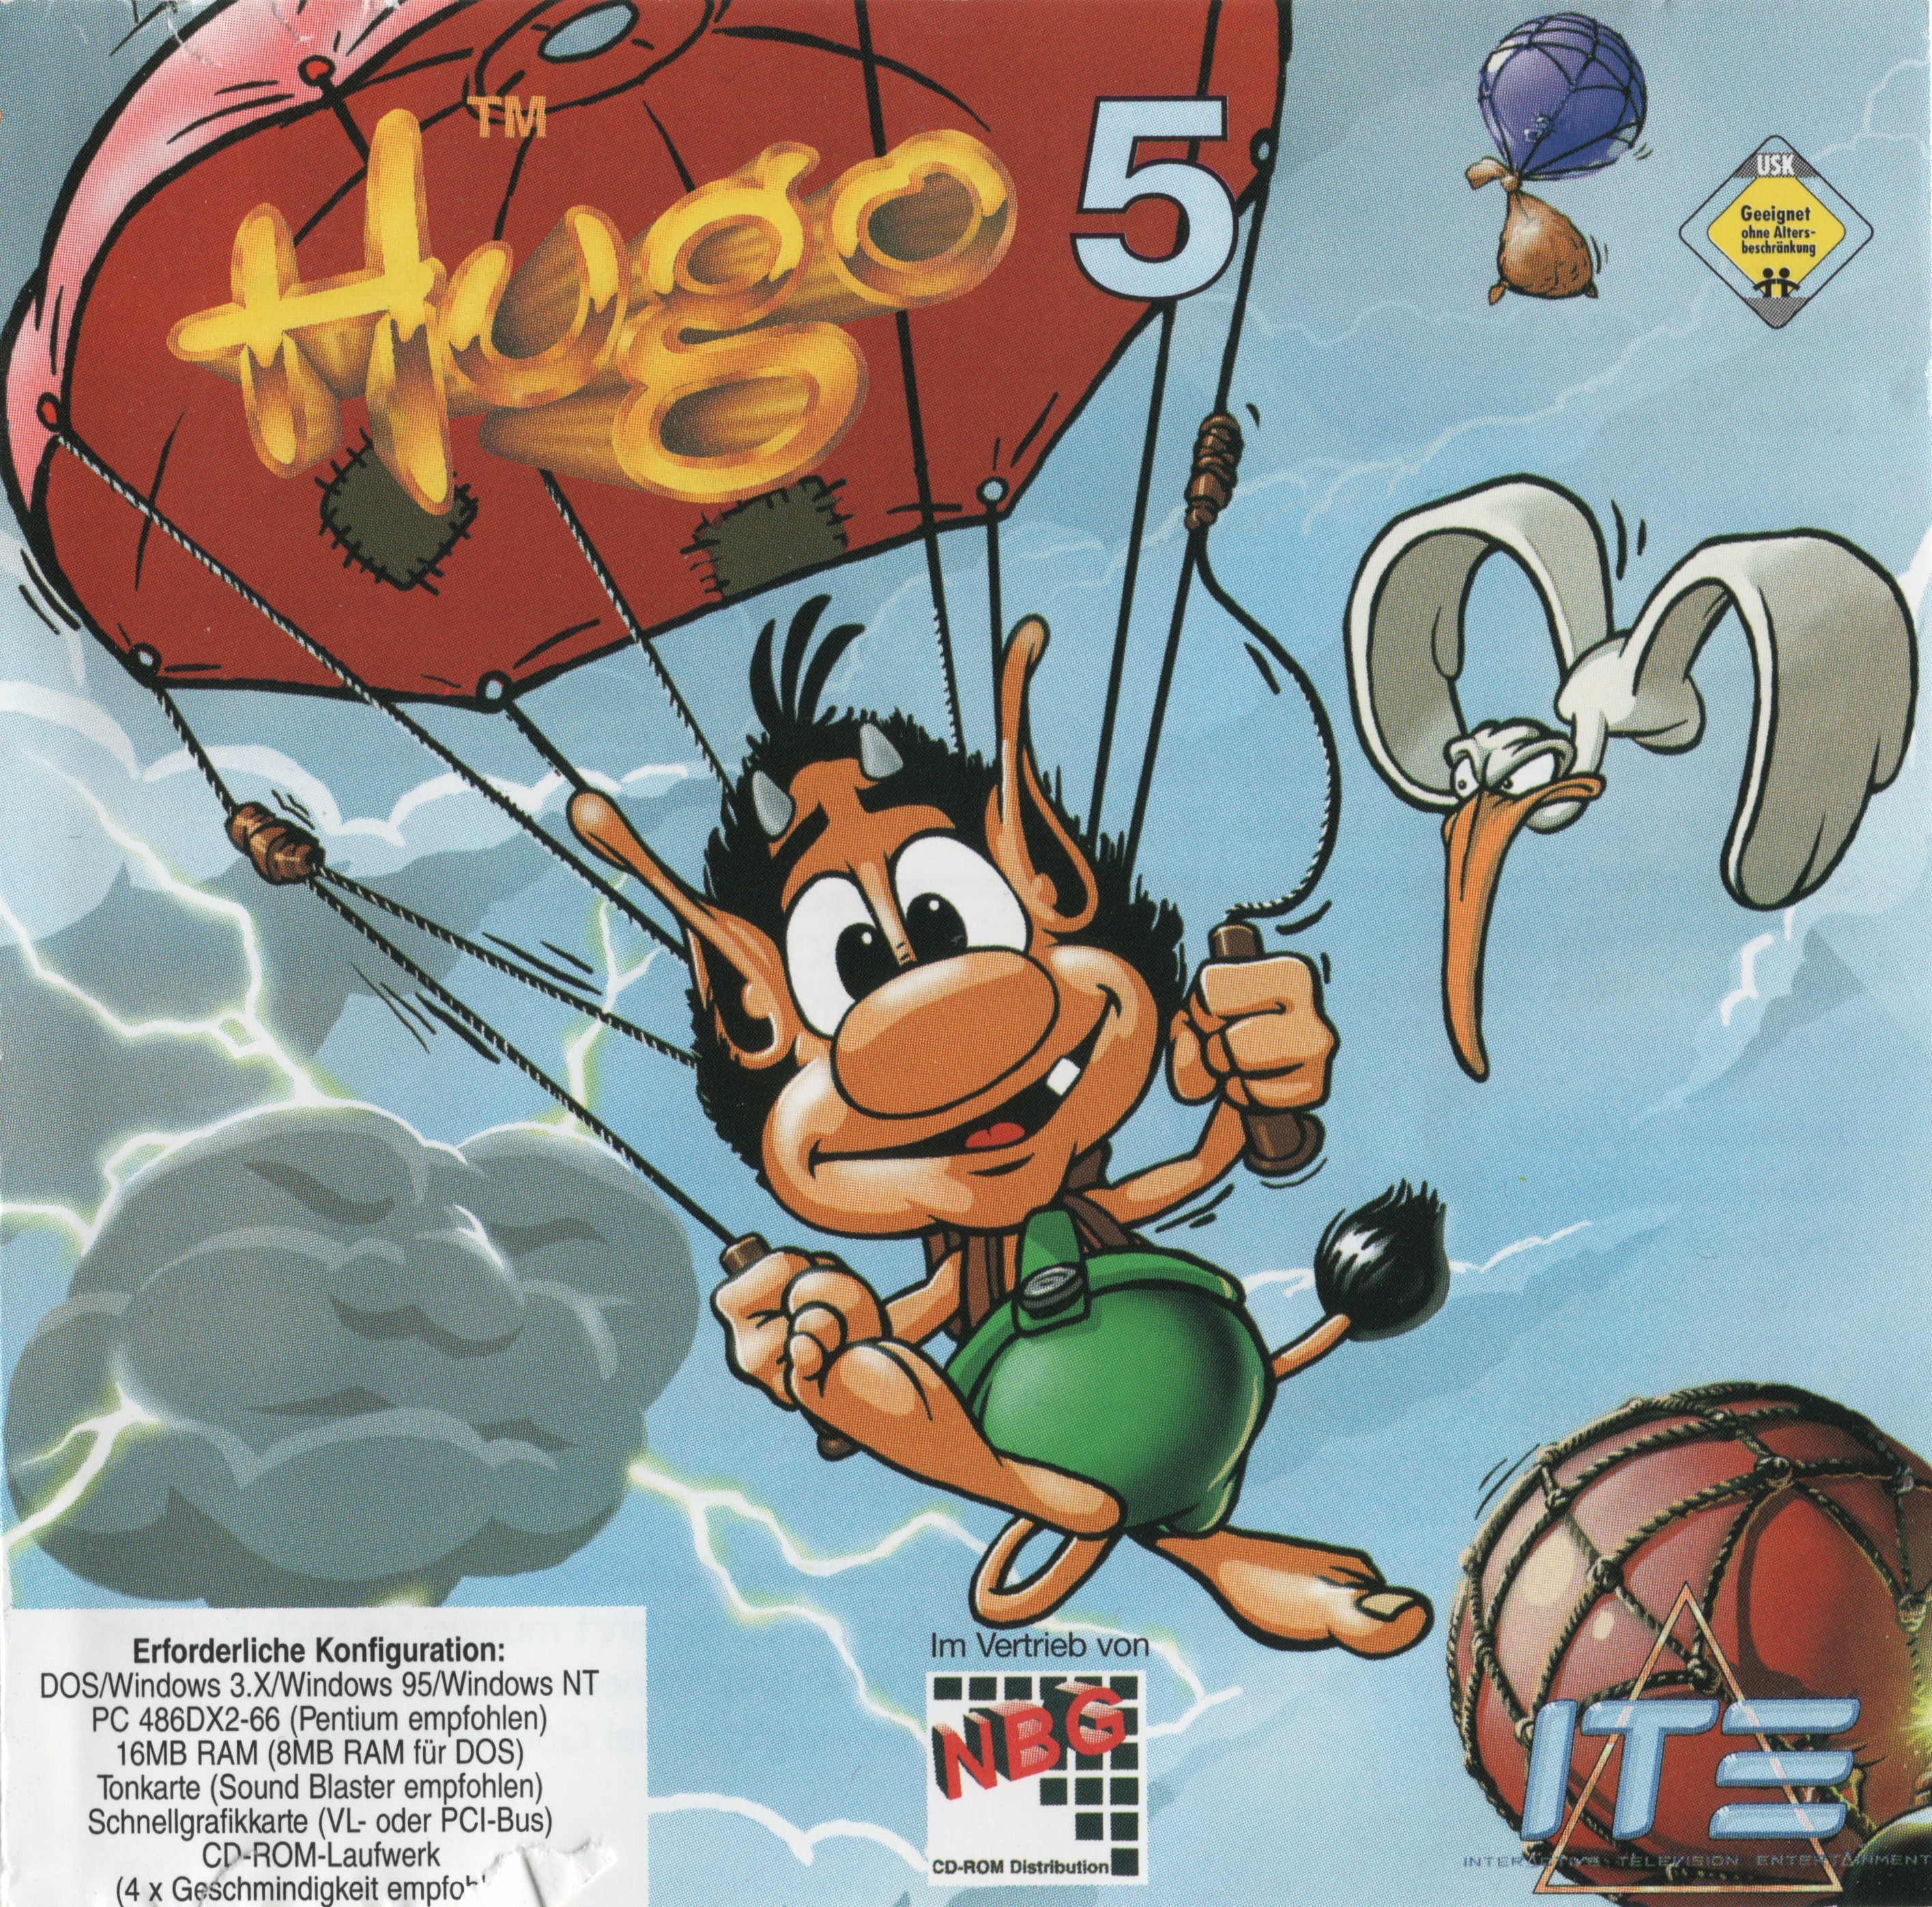 Hugo MS dos 1997. Hugo 5.0.4. Hugo 5